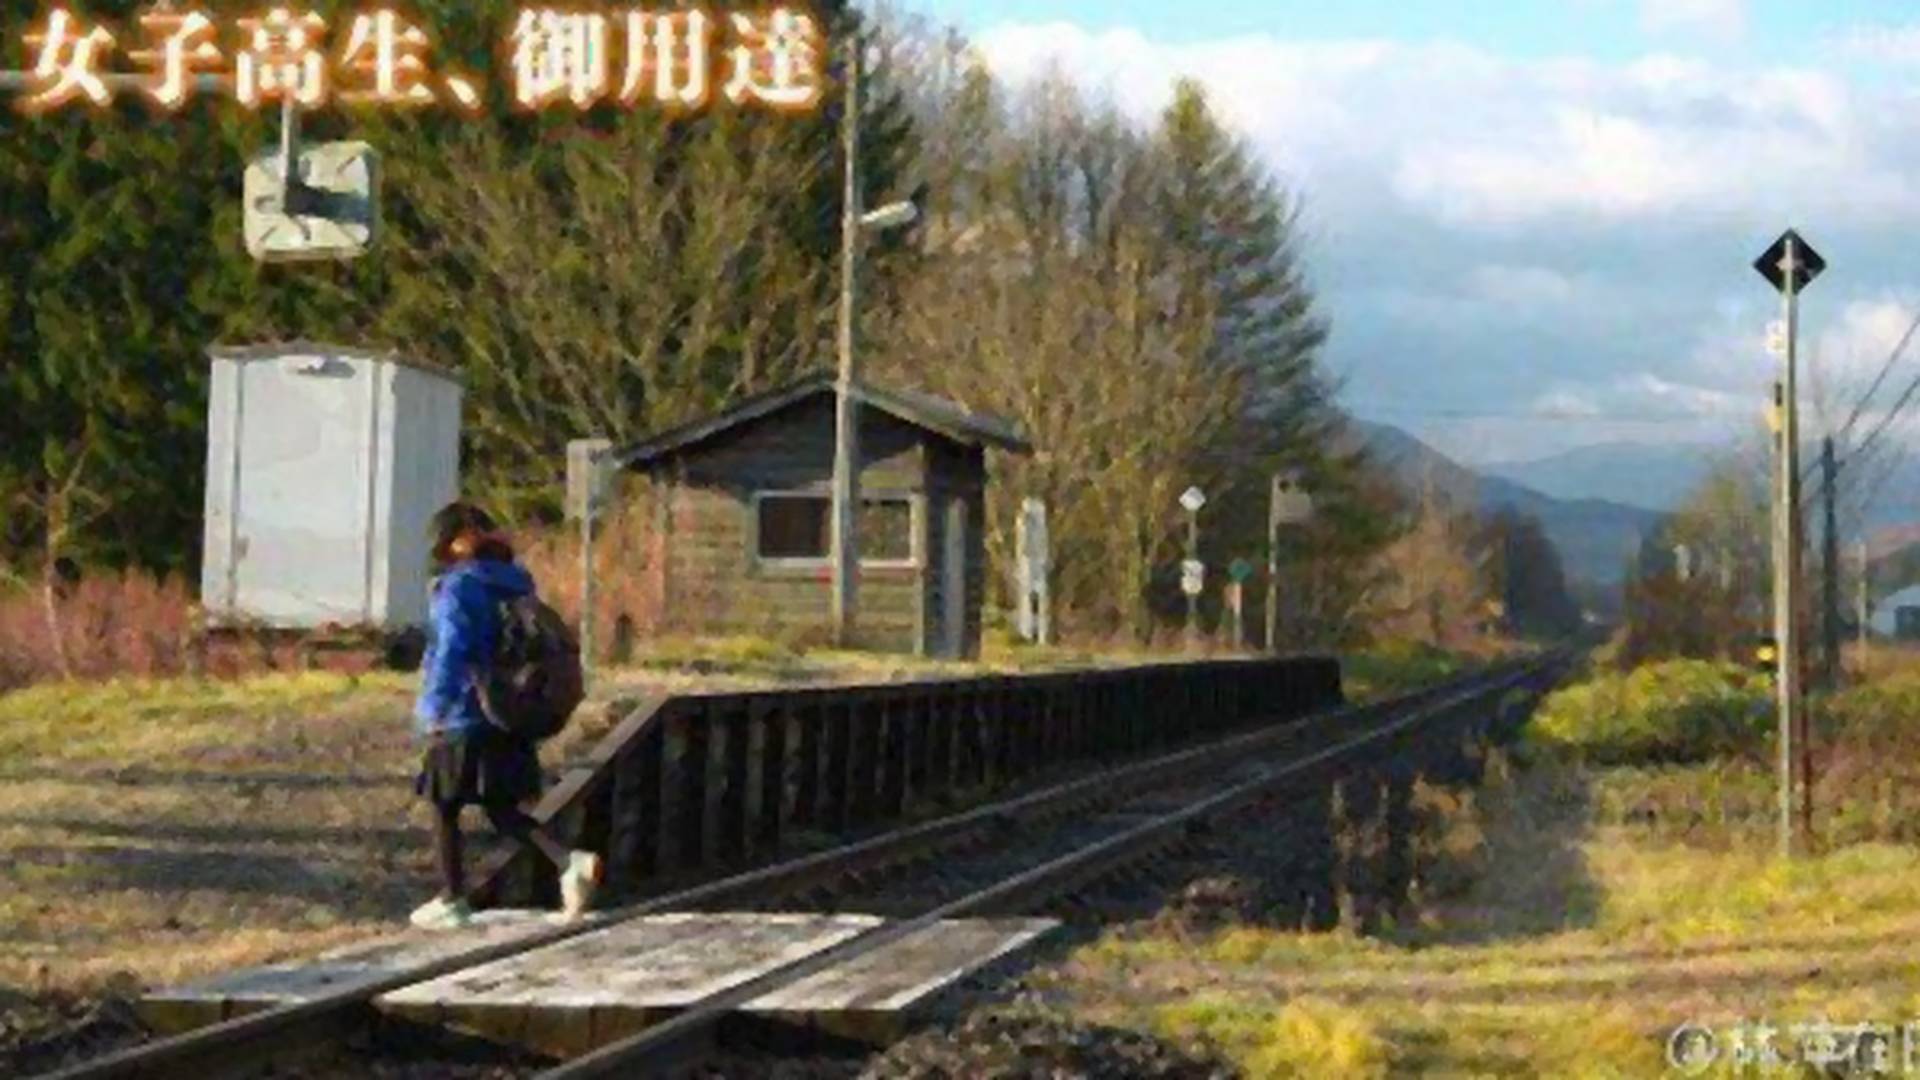 Japoński pociąg przez trzy lata zatrzymywał się na stacji dla jednej pasażerki. Zdjęcie rodem z anime zafascynowało internautów